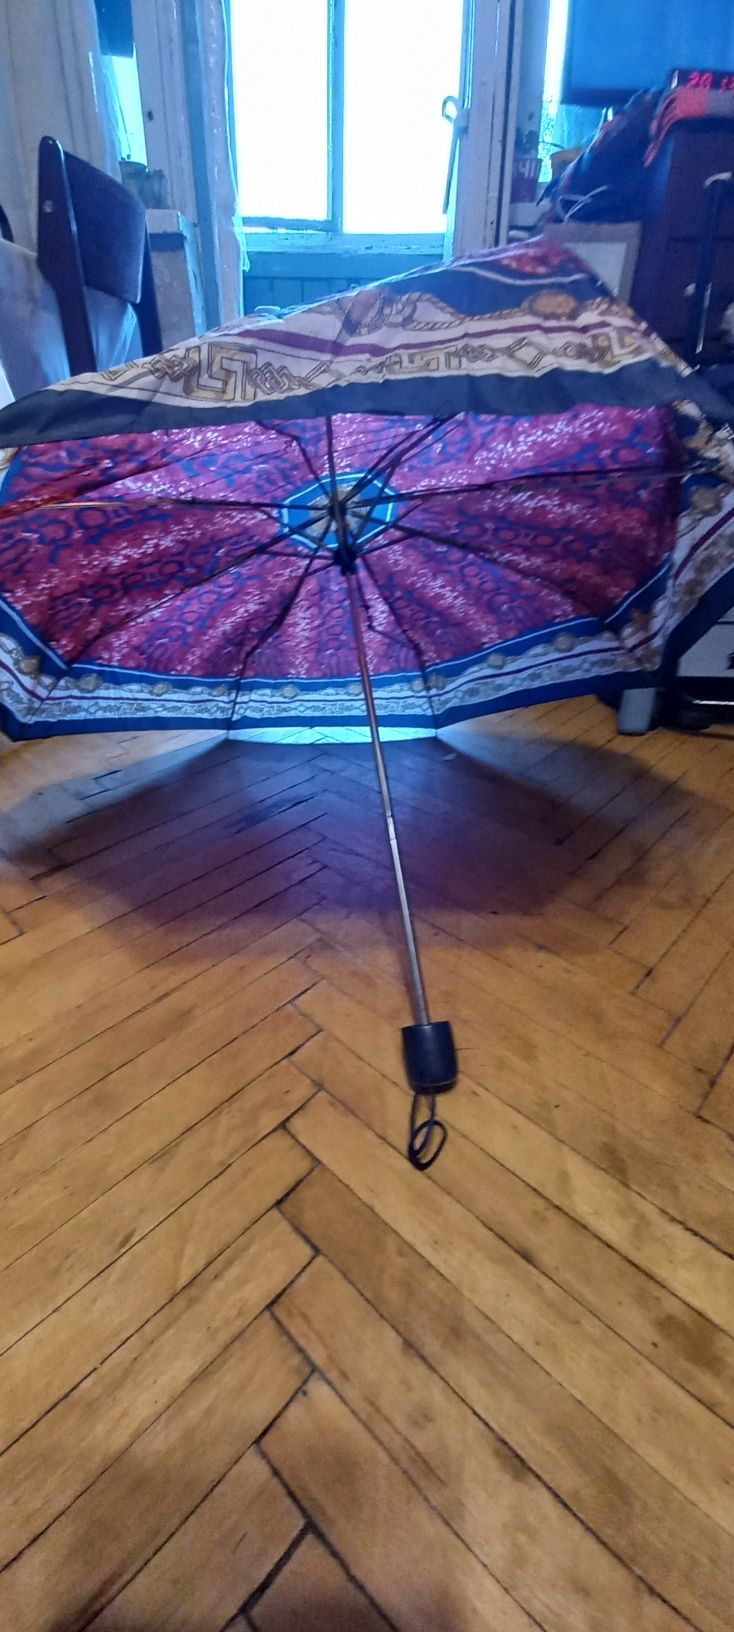 Зонтик на запчасти.Механический,складной